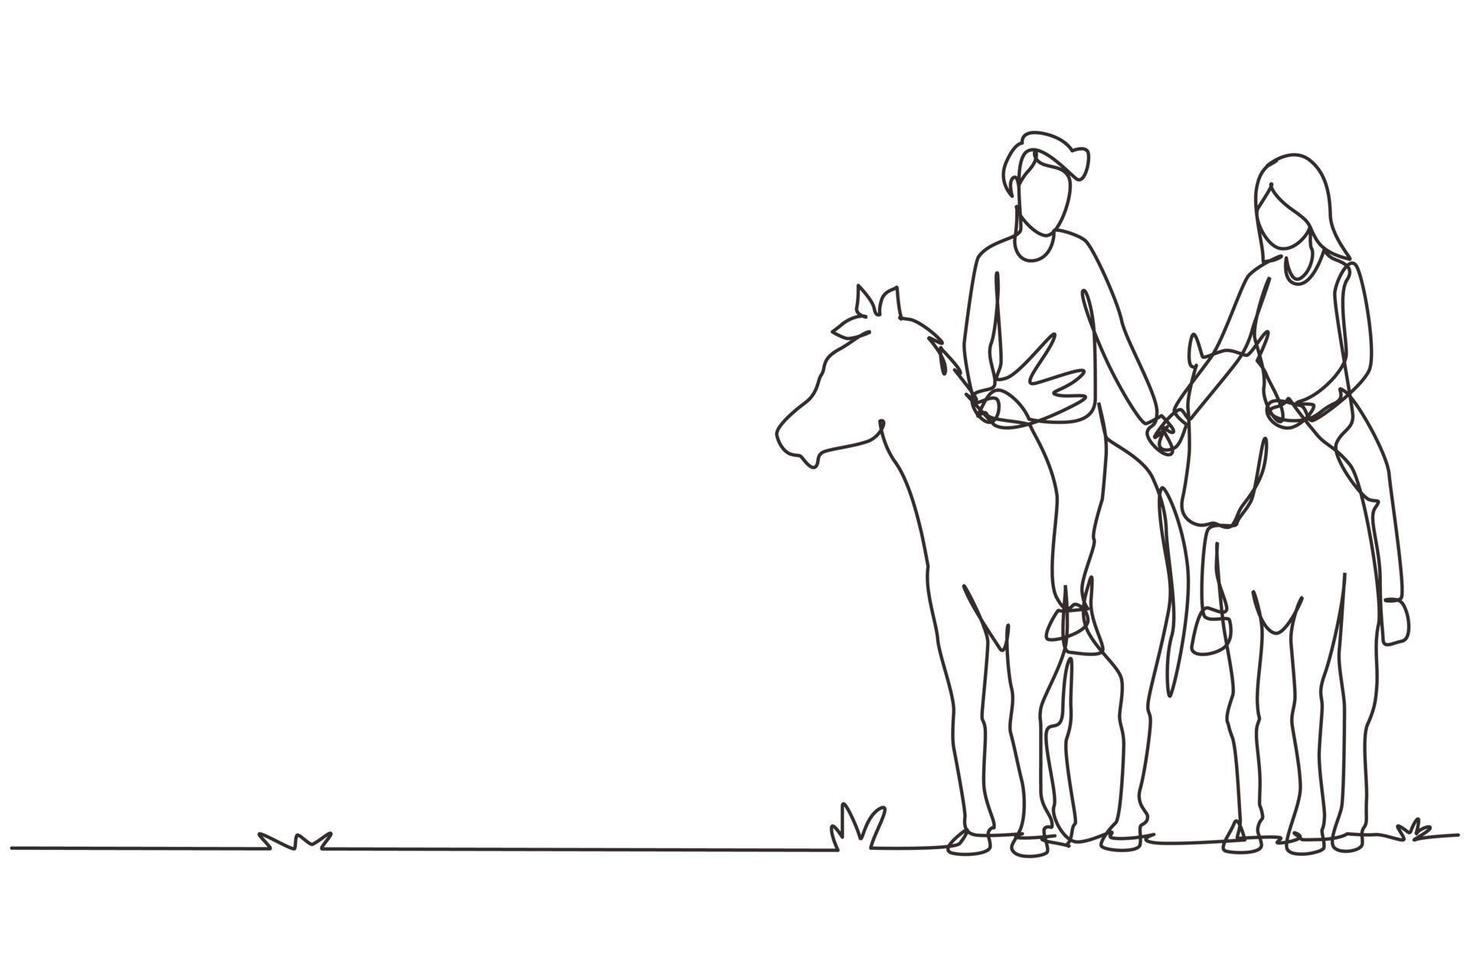 kontinuerlig en rad ritning par ridande hästar hand i hand vid solnedgången. glad man gör förslag äktenskap med kvinna. engagemang och kärleksrelation. enda rad rita design vektorgrafisk illustration vektor